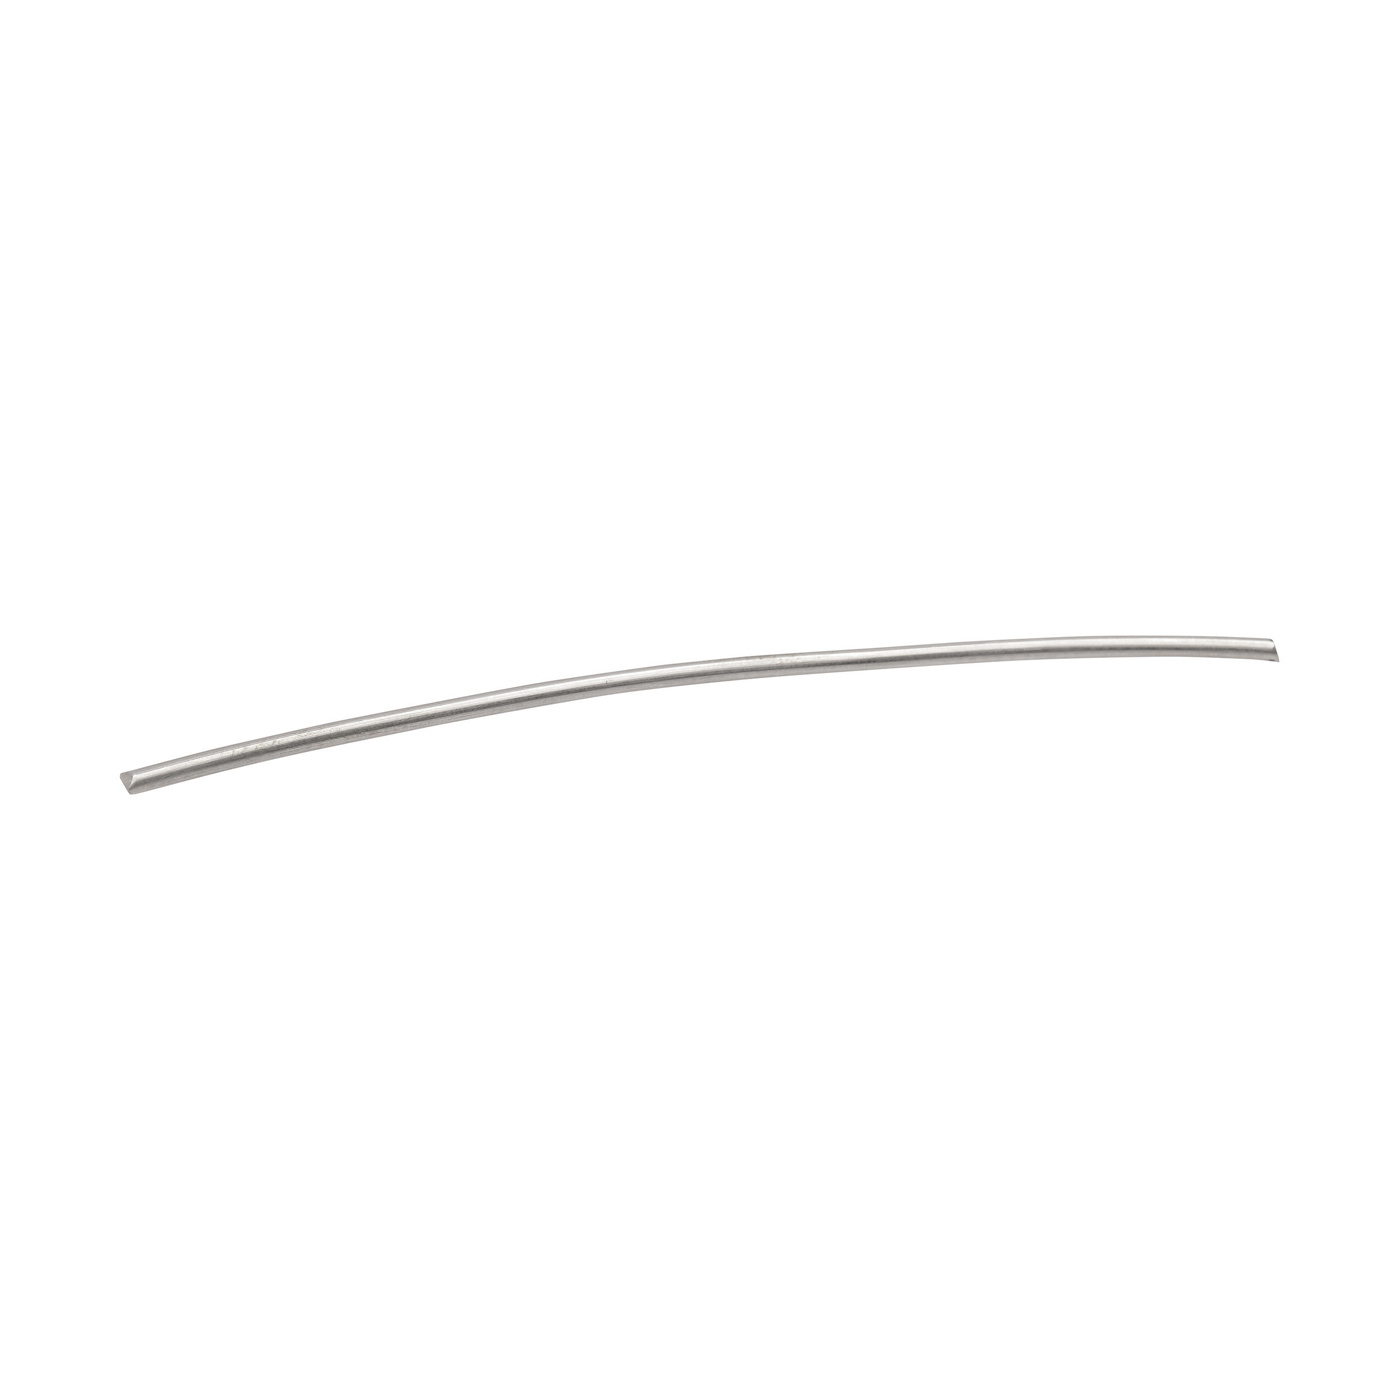 Round Wire, 590WG, ø 1 mm, Length 15 cm - 1 piece